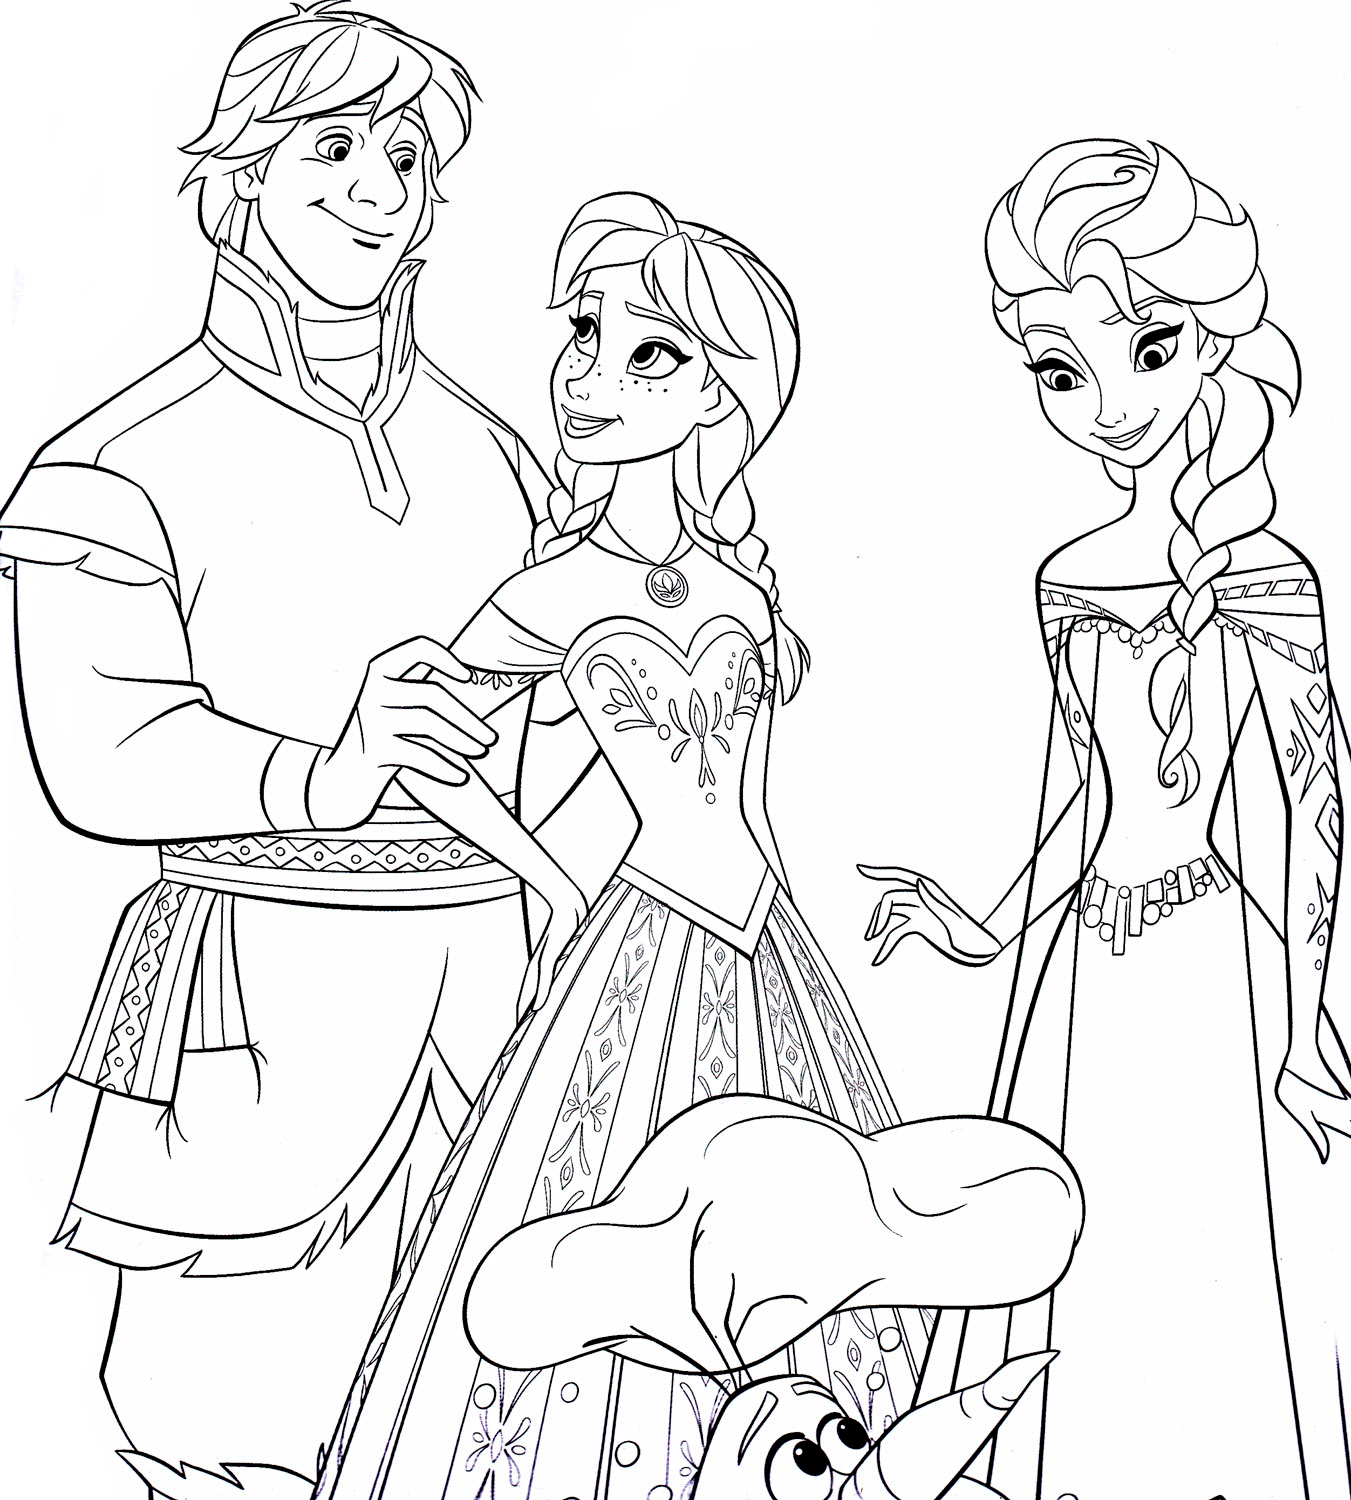 Dibujo para colorear de Kristoff, Anna y Elsa de la película Frozen